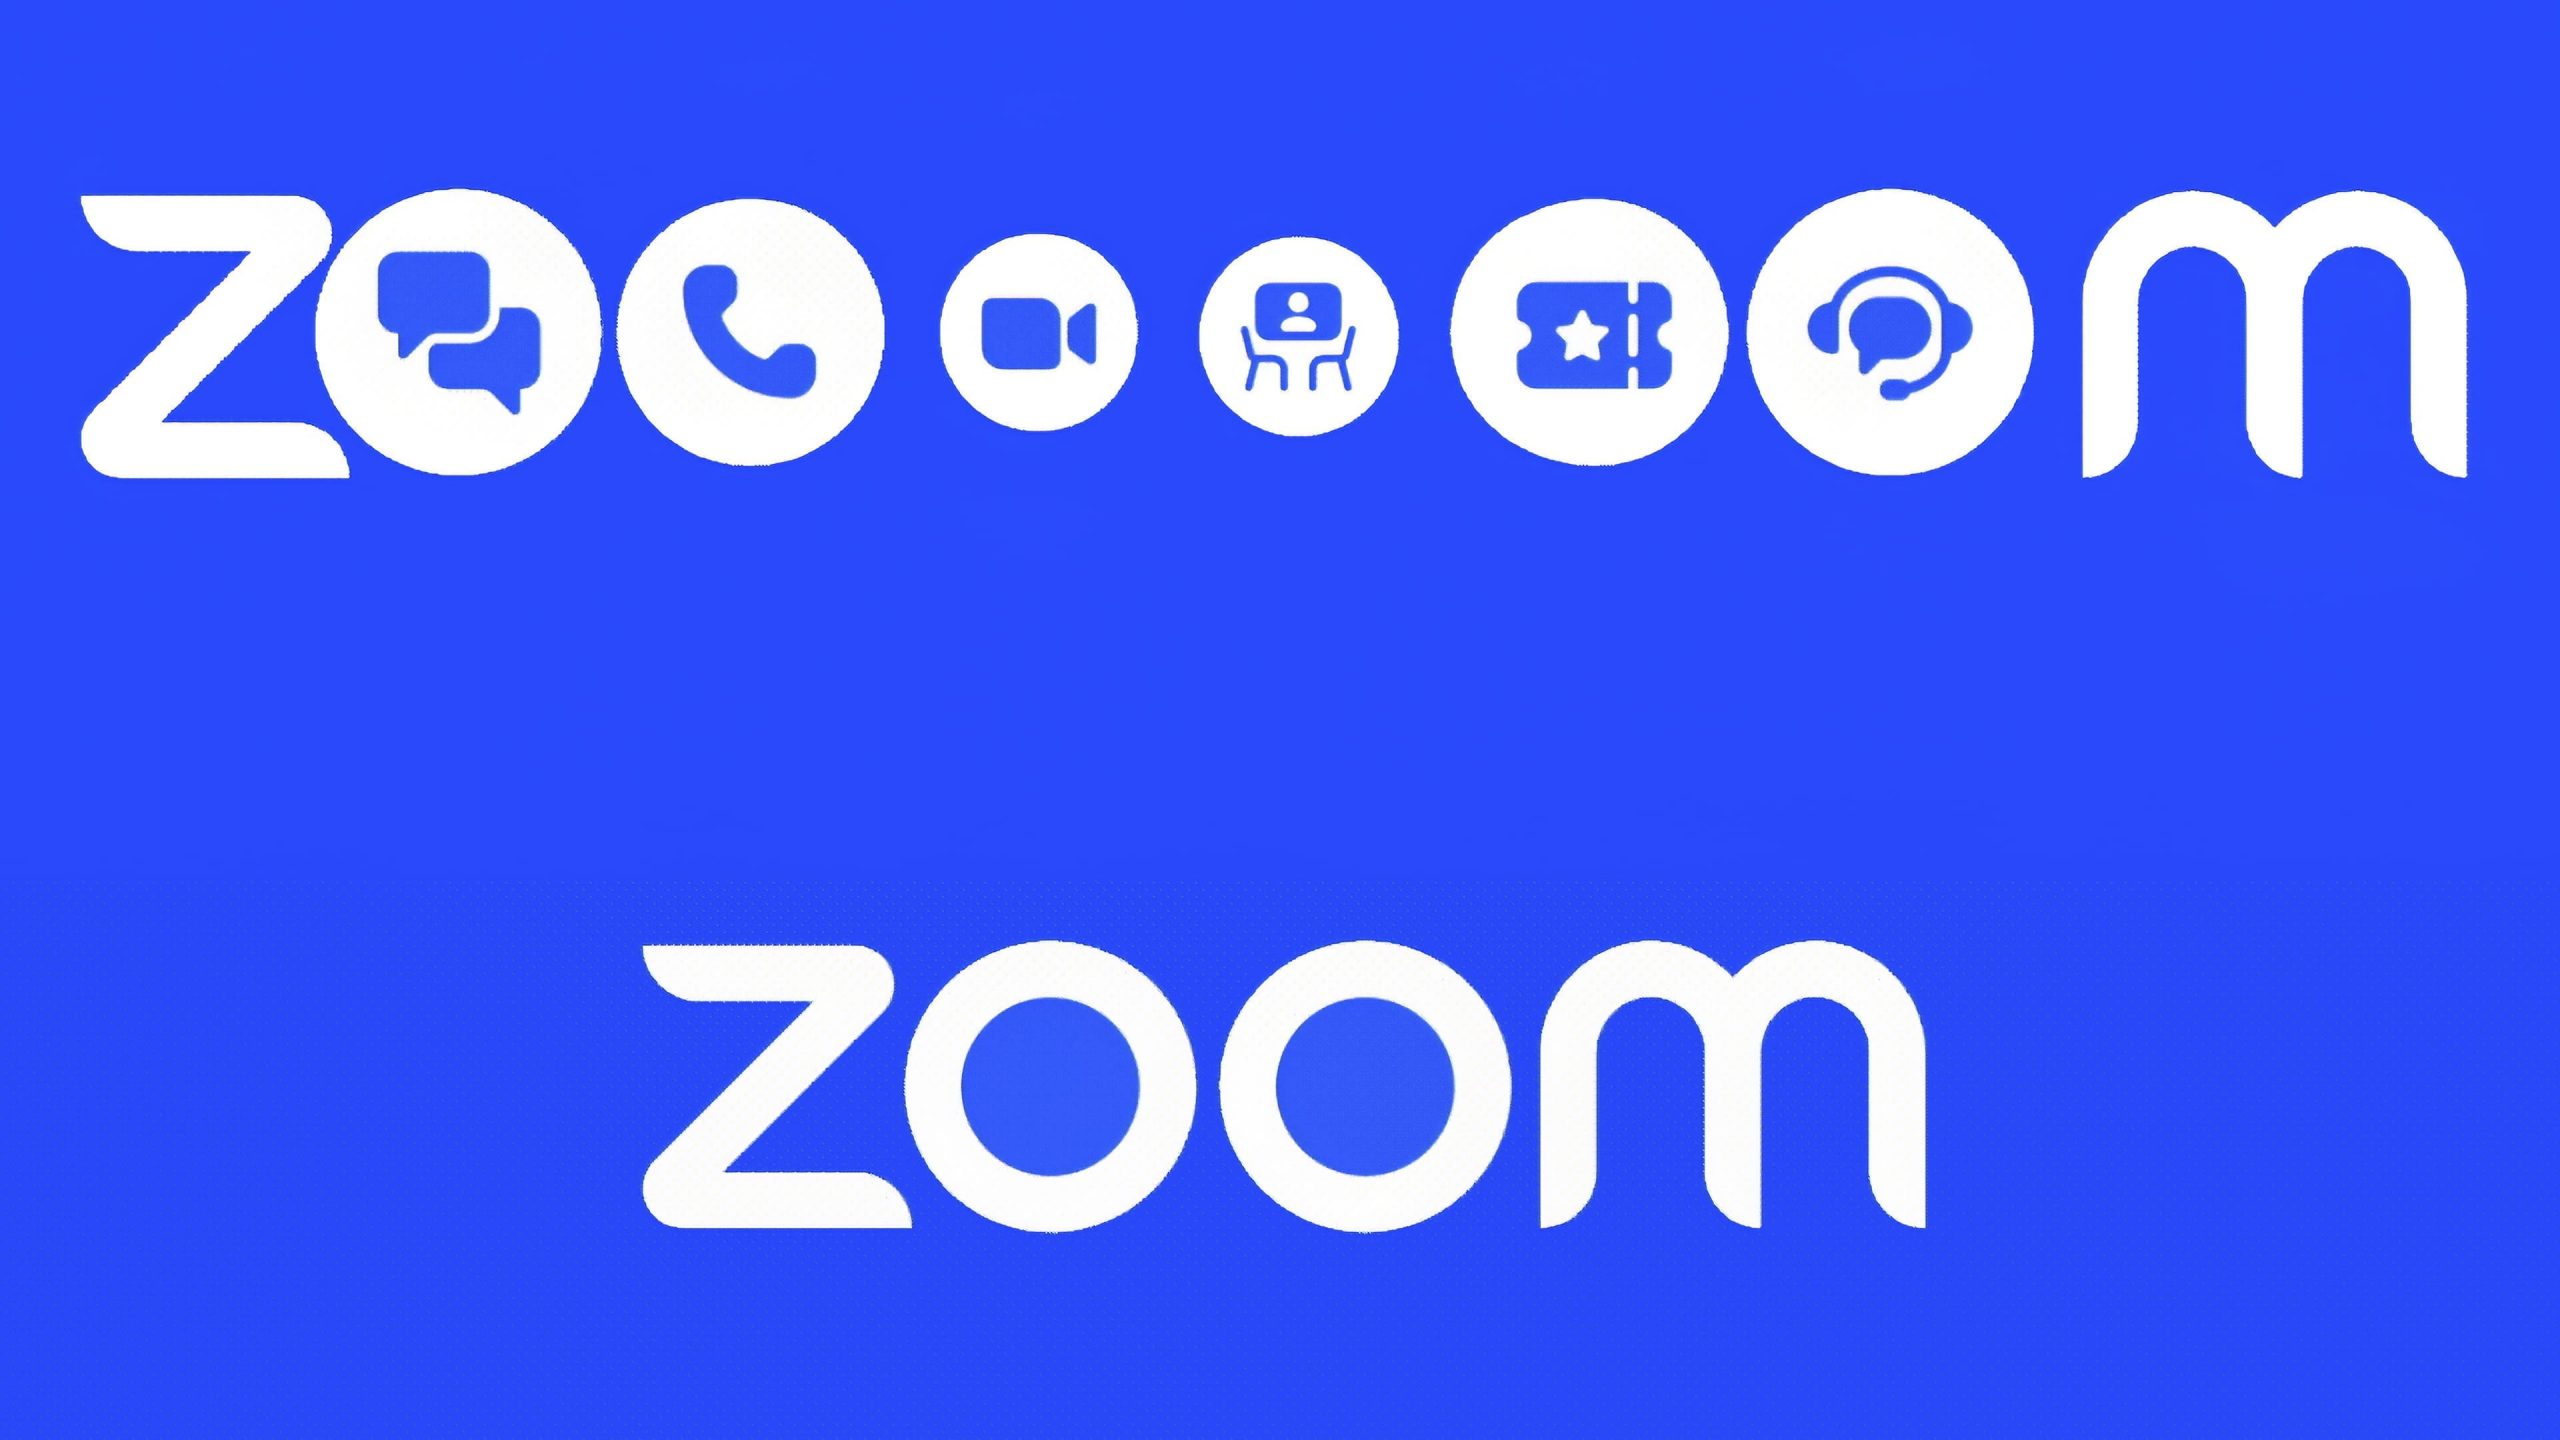 Zoom เปิดตัวเครื่องมือ AI ใหม่เพื่อปรับปรุงการประชุมทางไกล